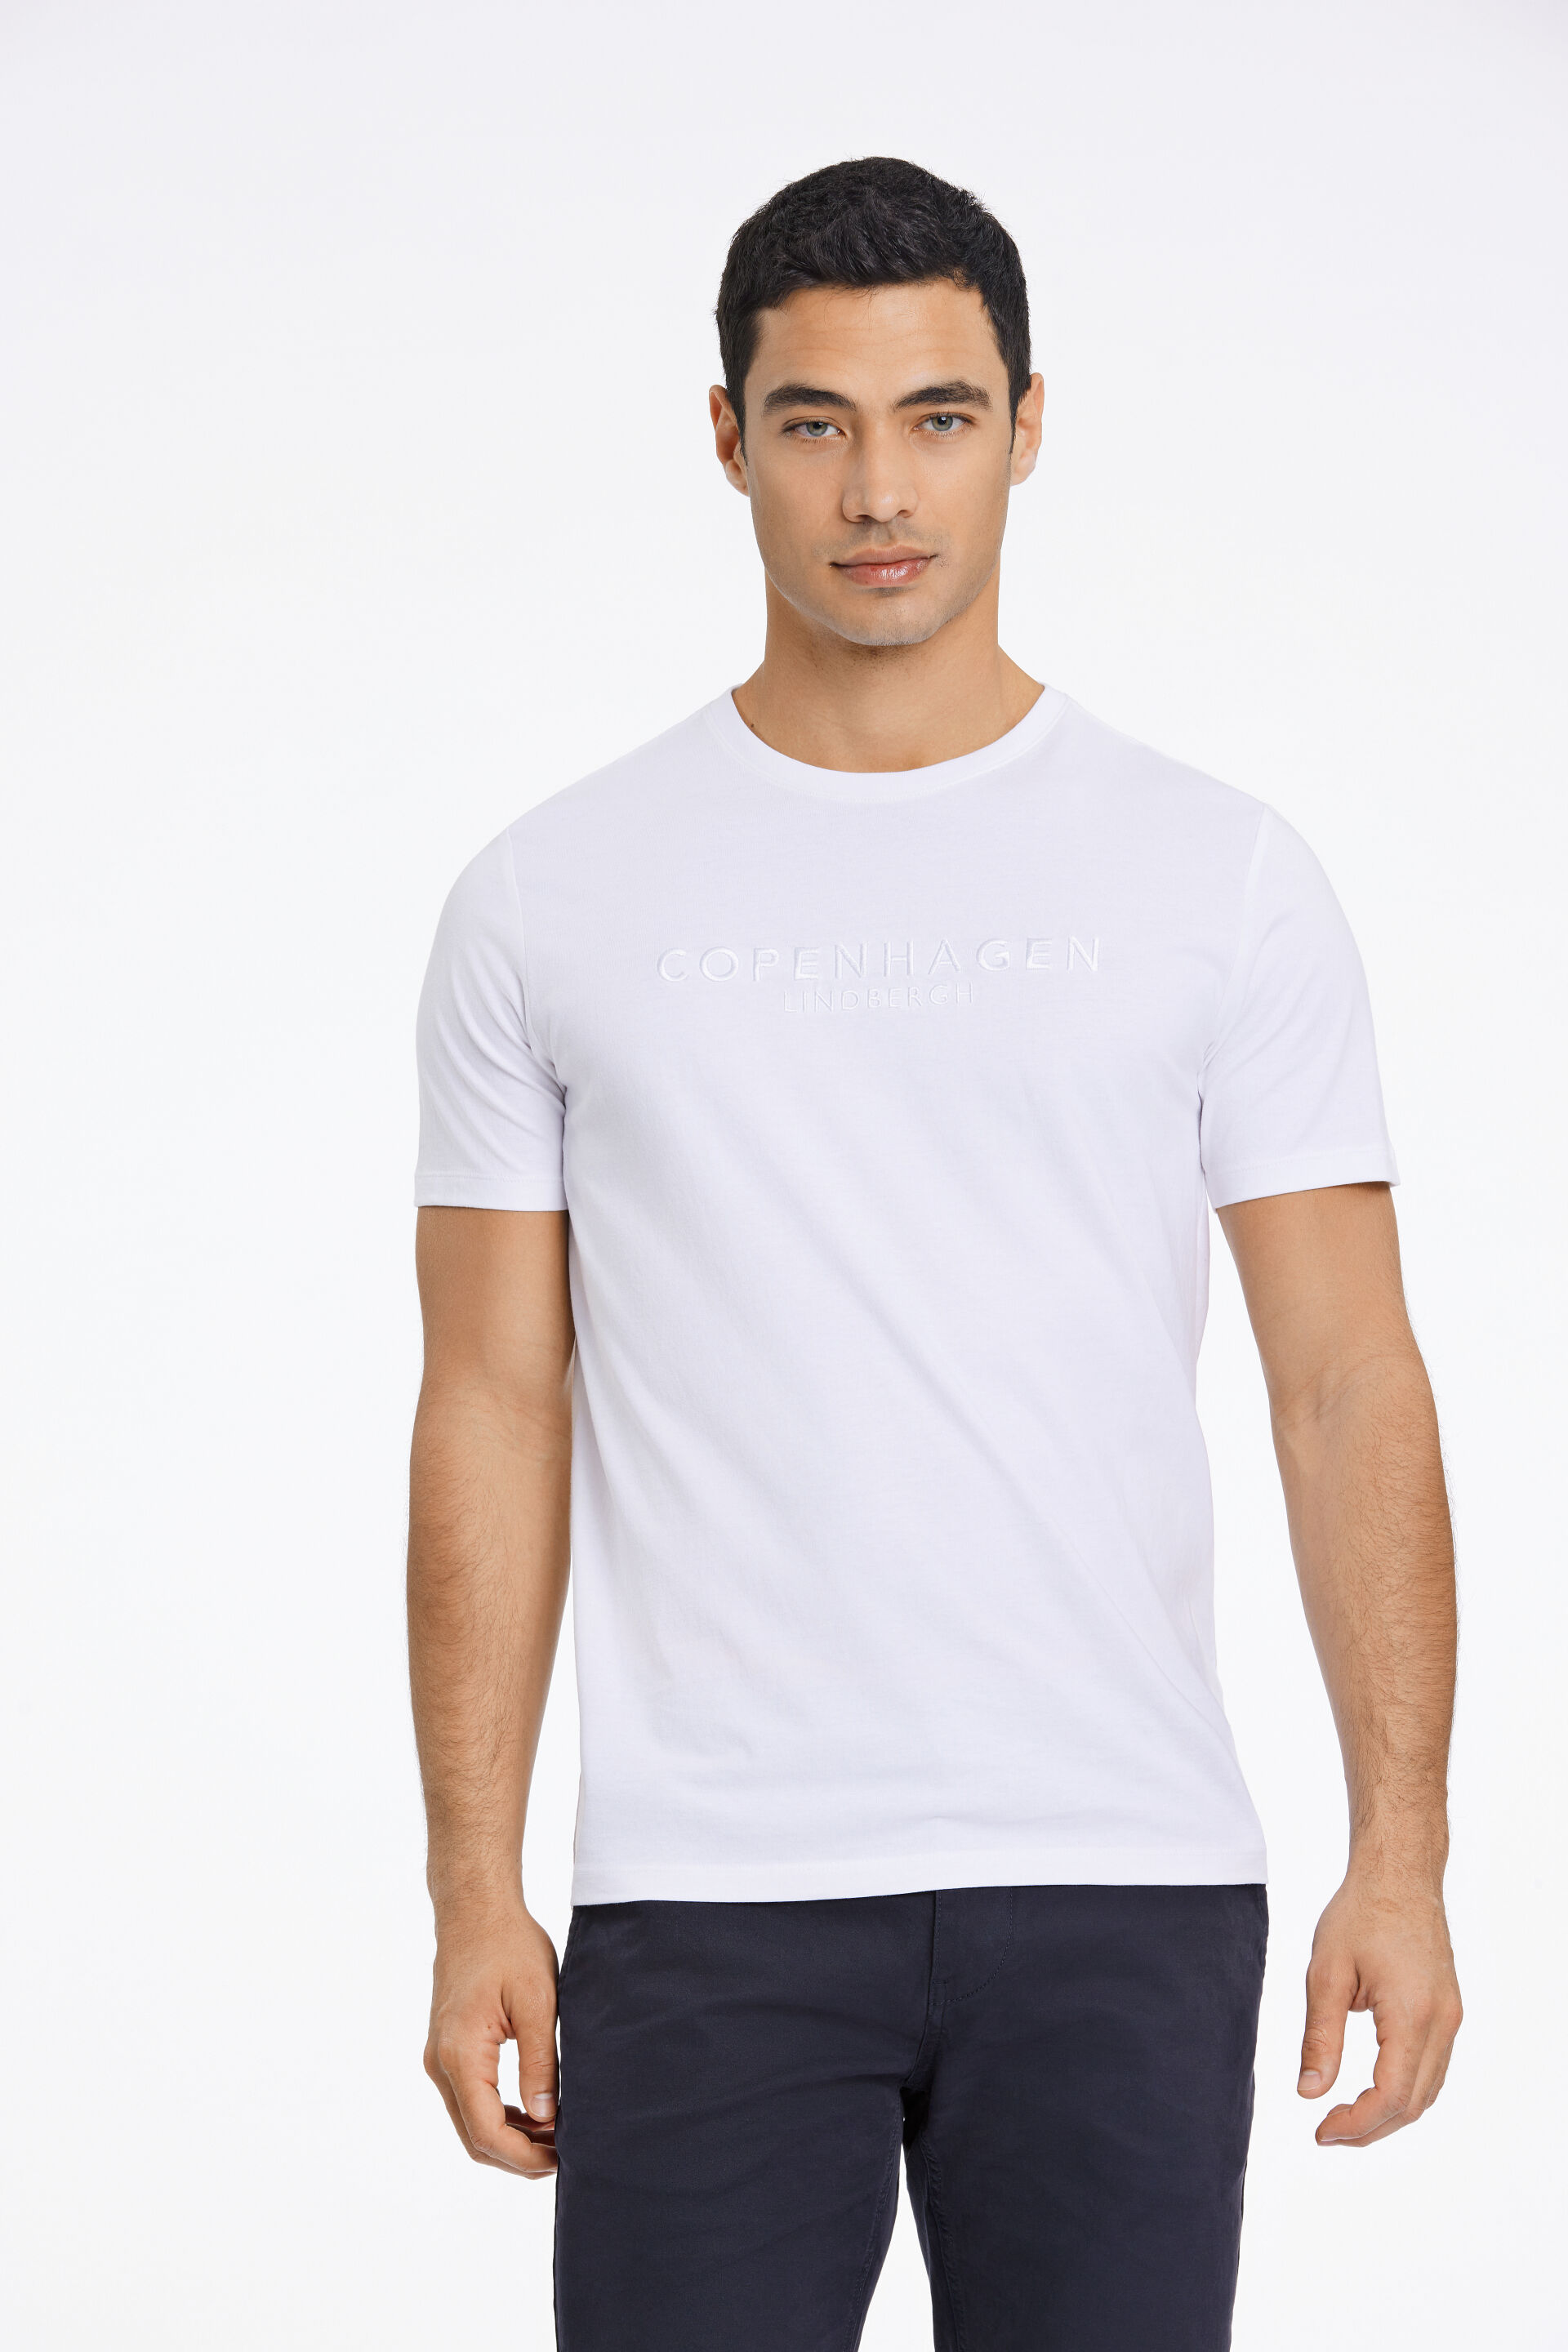 T-shirt T-shirt Weiss 30-400247